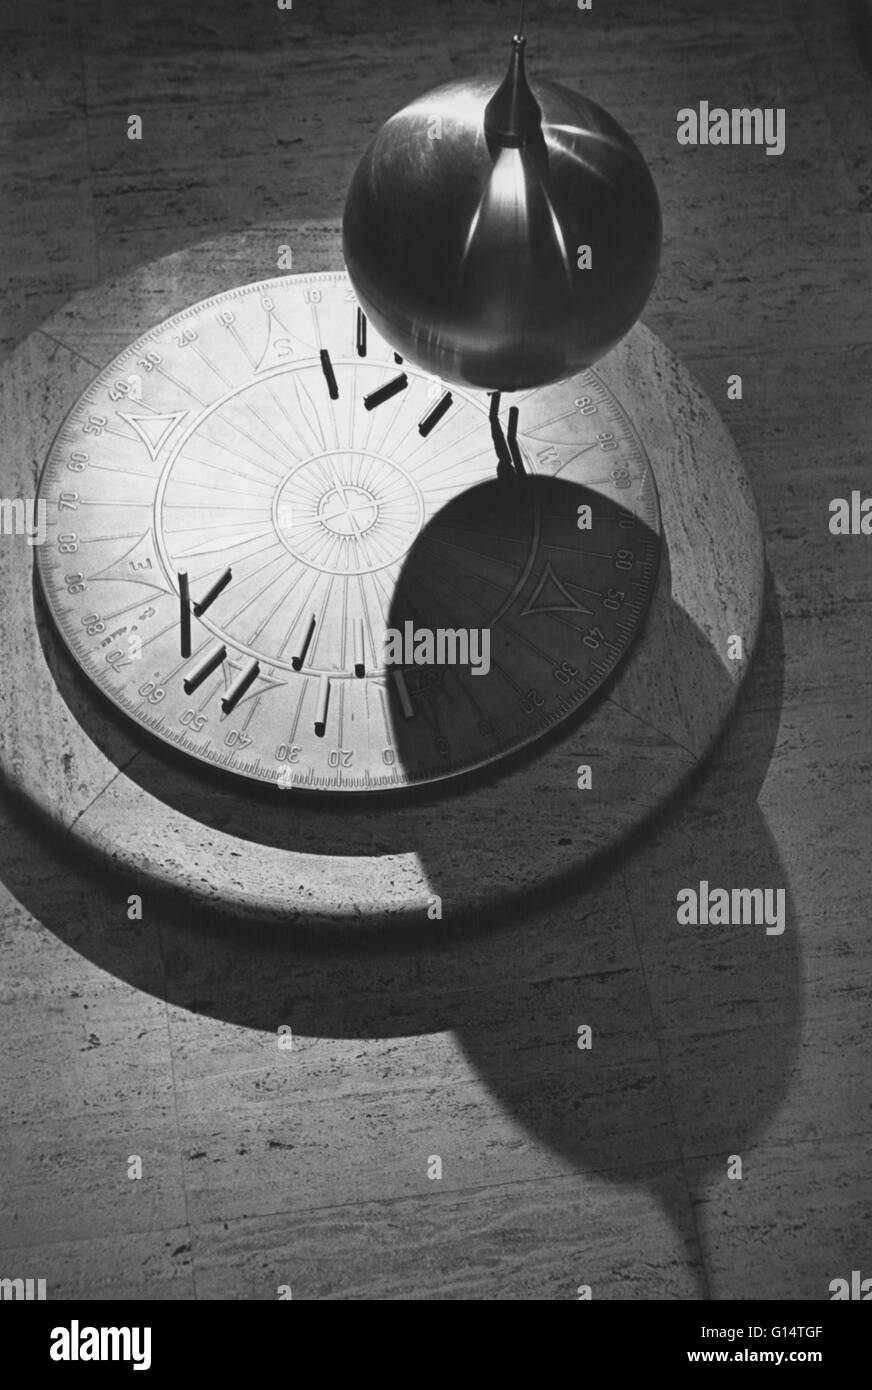 Ein Bild des Astrolabiums basierend auf Galileo Modell. Das Astrolabium dient viele Funktionen, einschließlich Vermessung und prognostizieren die Positionen der Sterne, Planeten, die Sonne und den Mond. Stockfoto